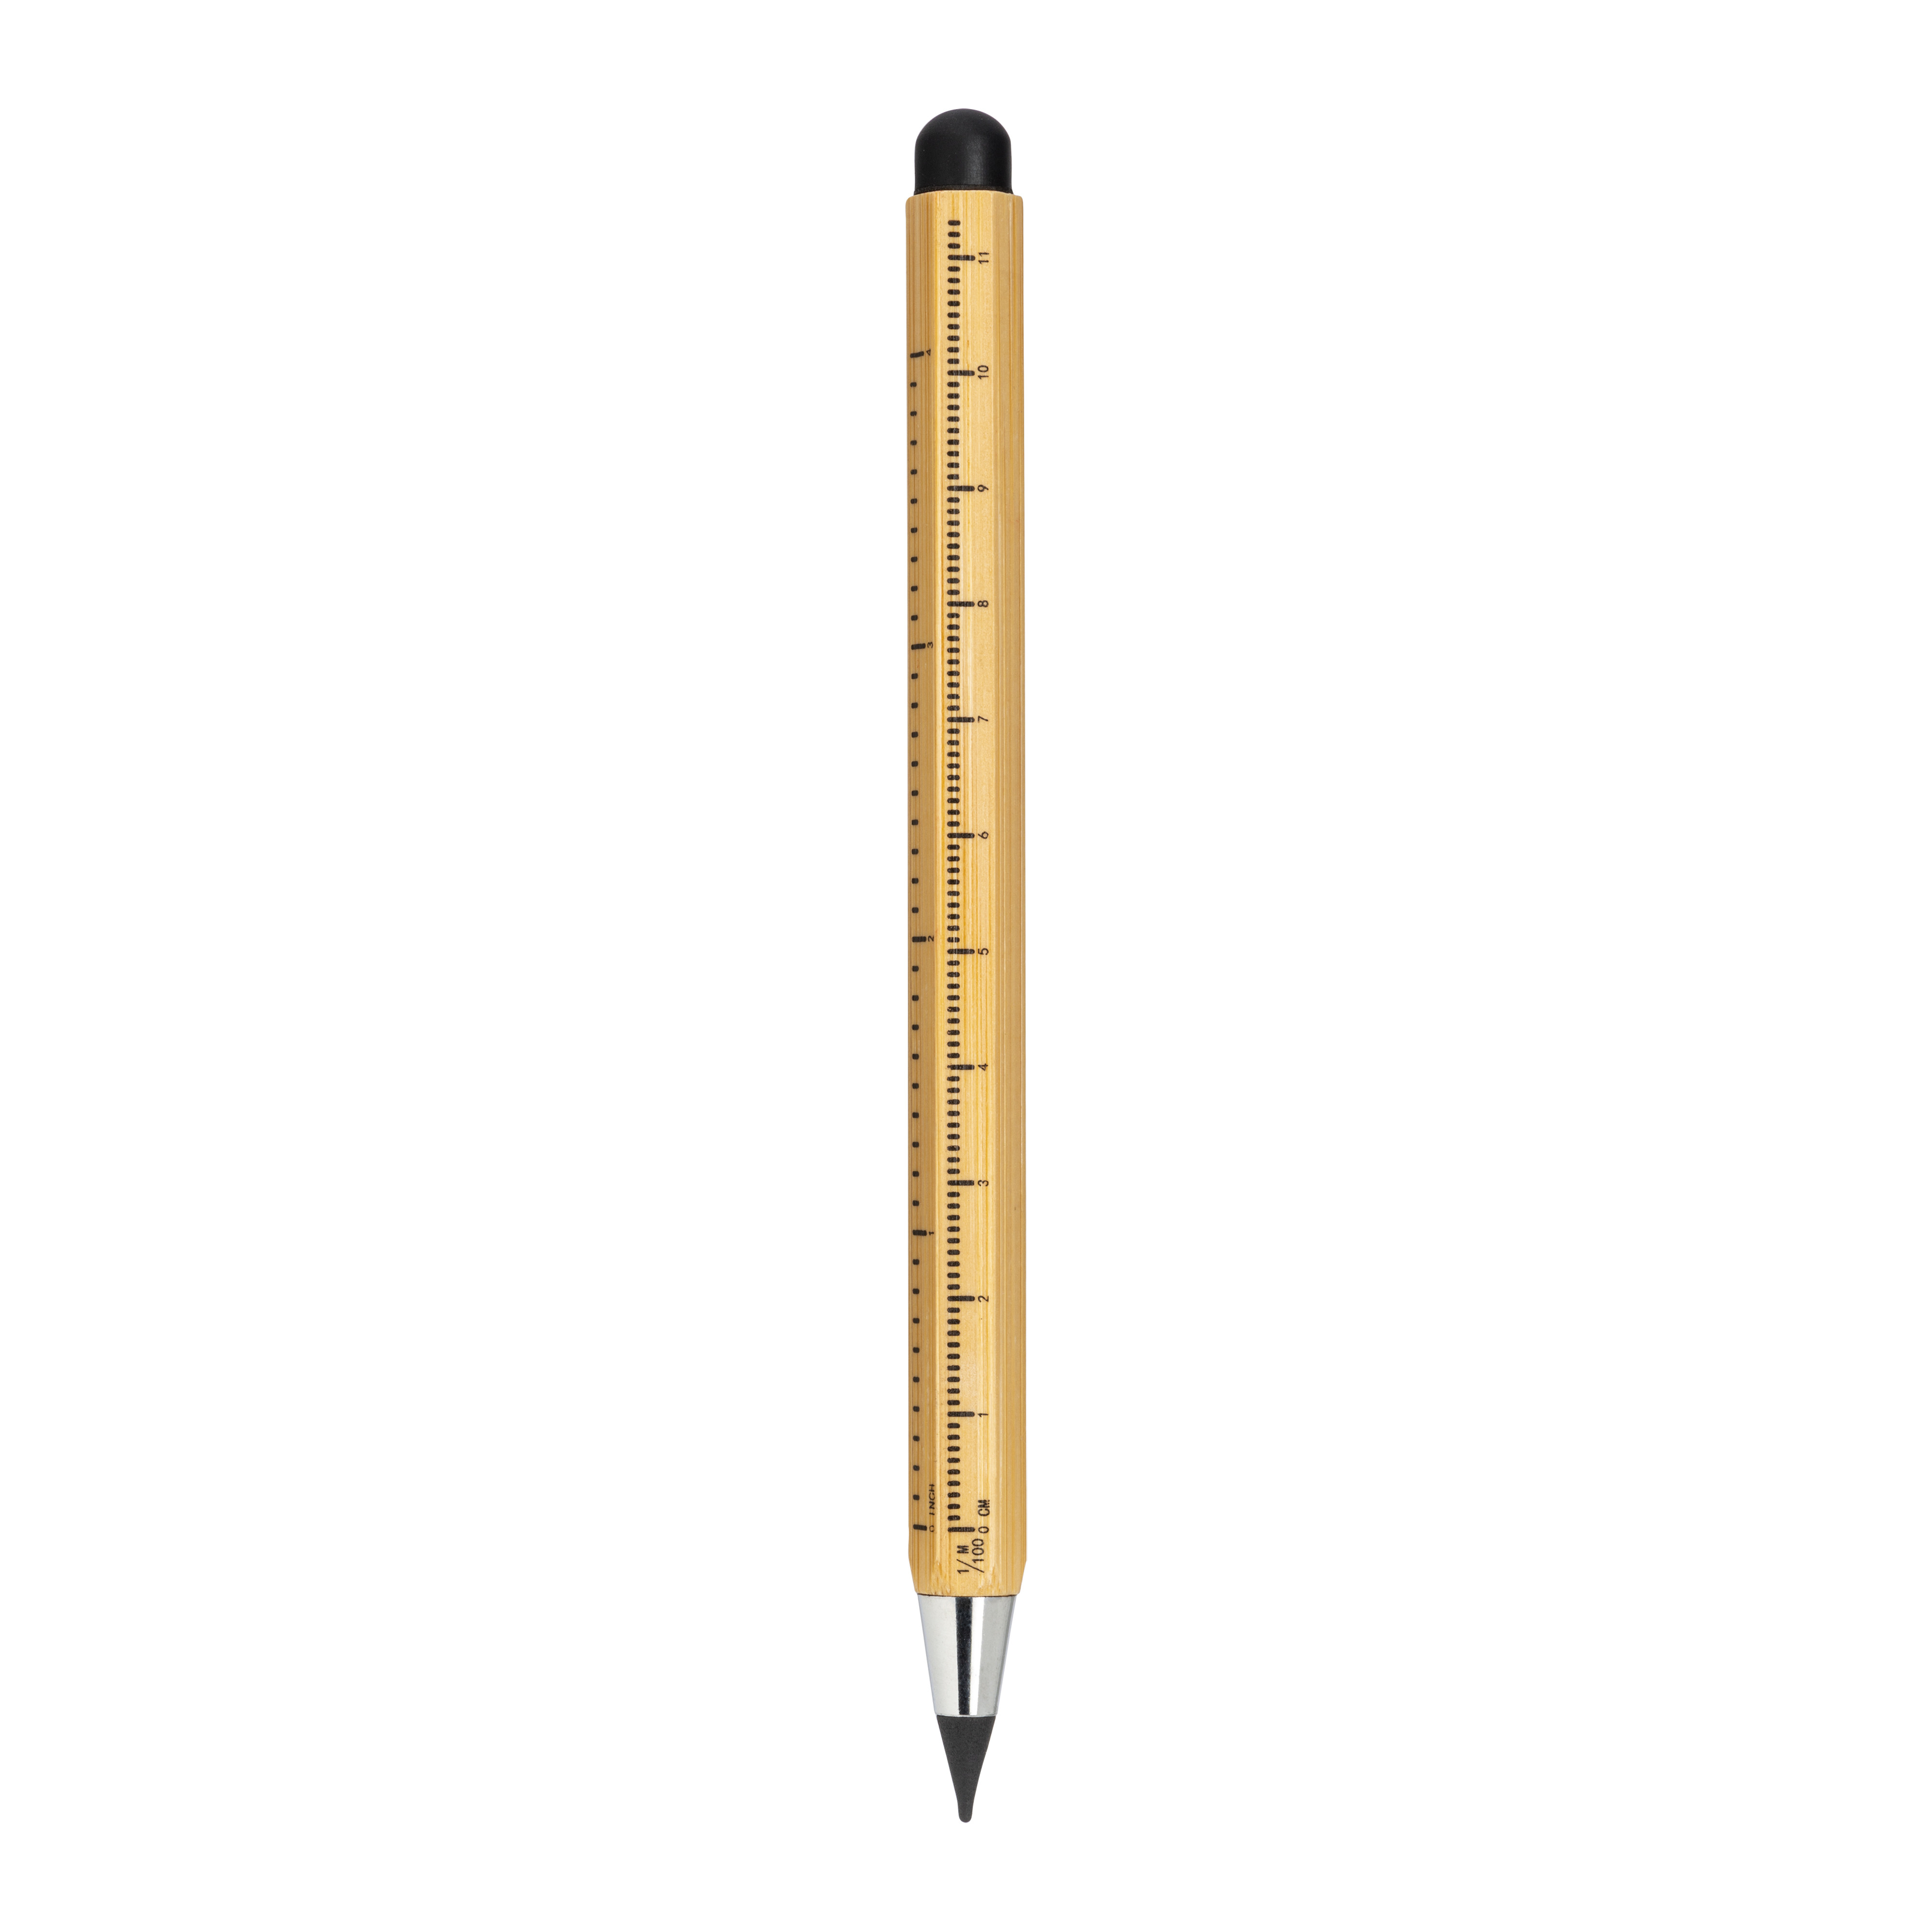 Penna righello in bambù senza inchiostro, con gommino touch screen